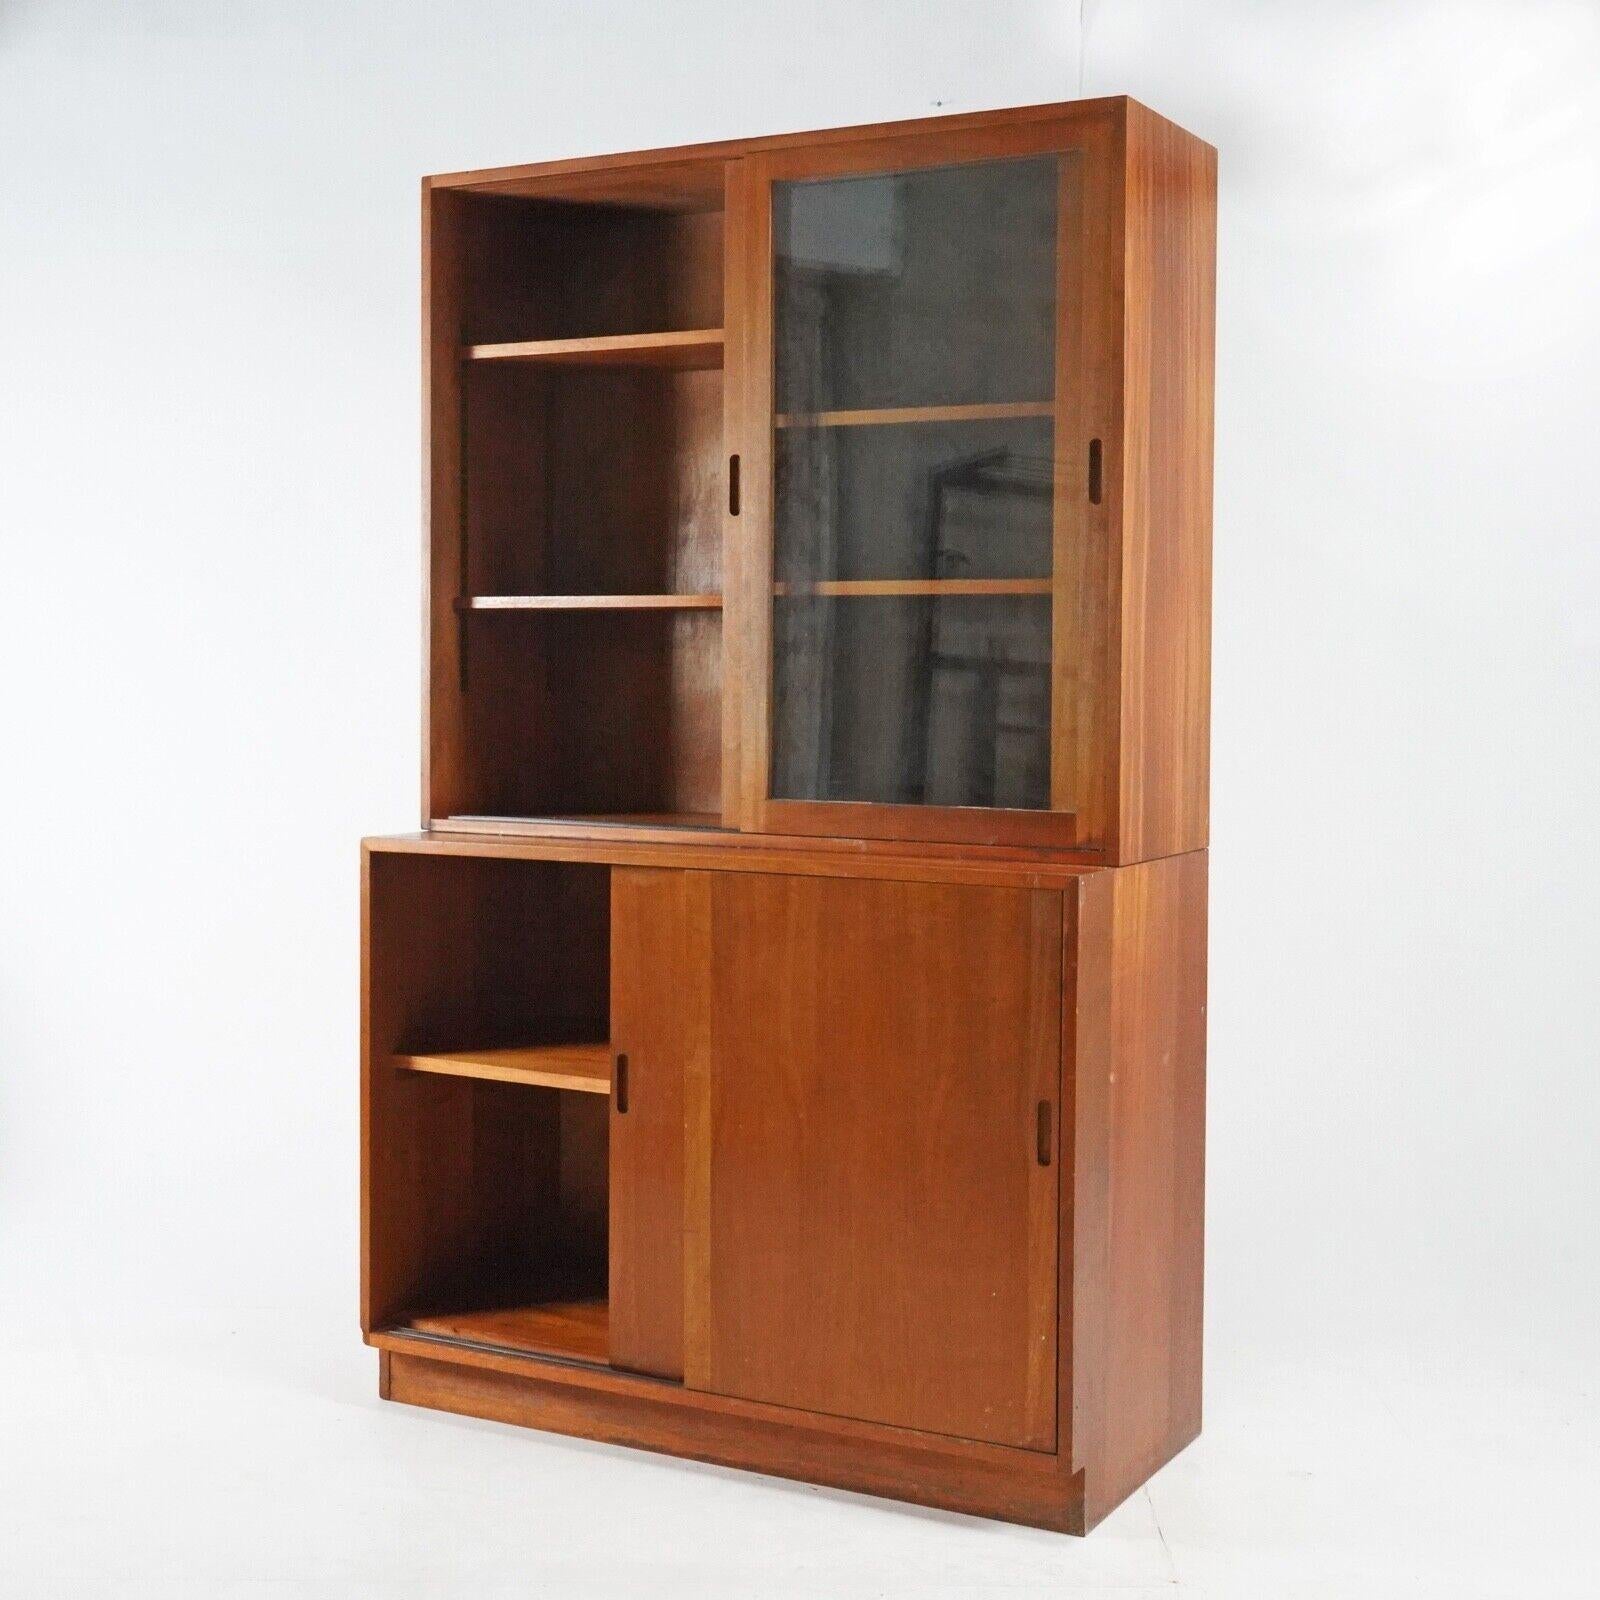 Vintage 1950's Teak Glazed Display Cabinet Kitchen Storage Unit -Linen Cupboard 5